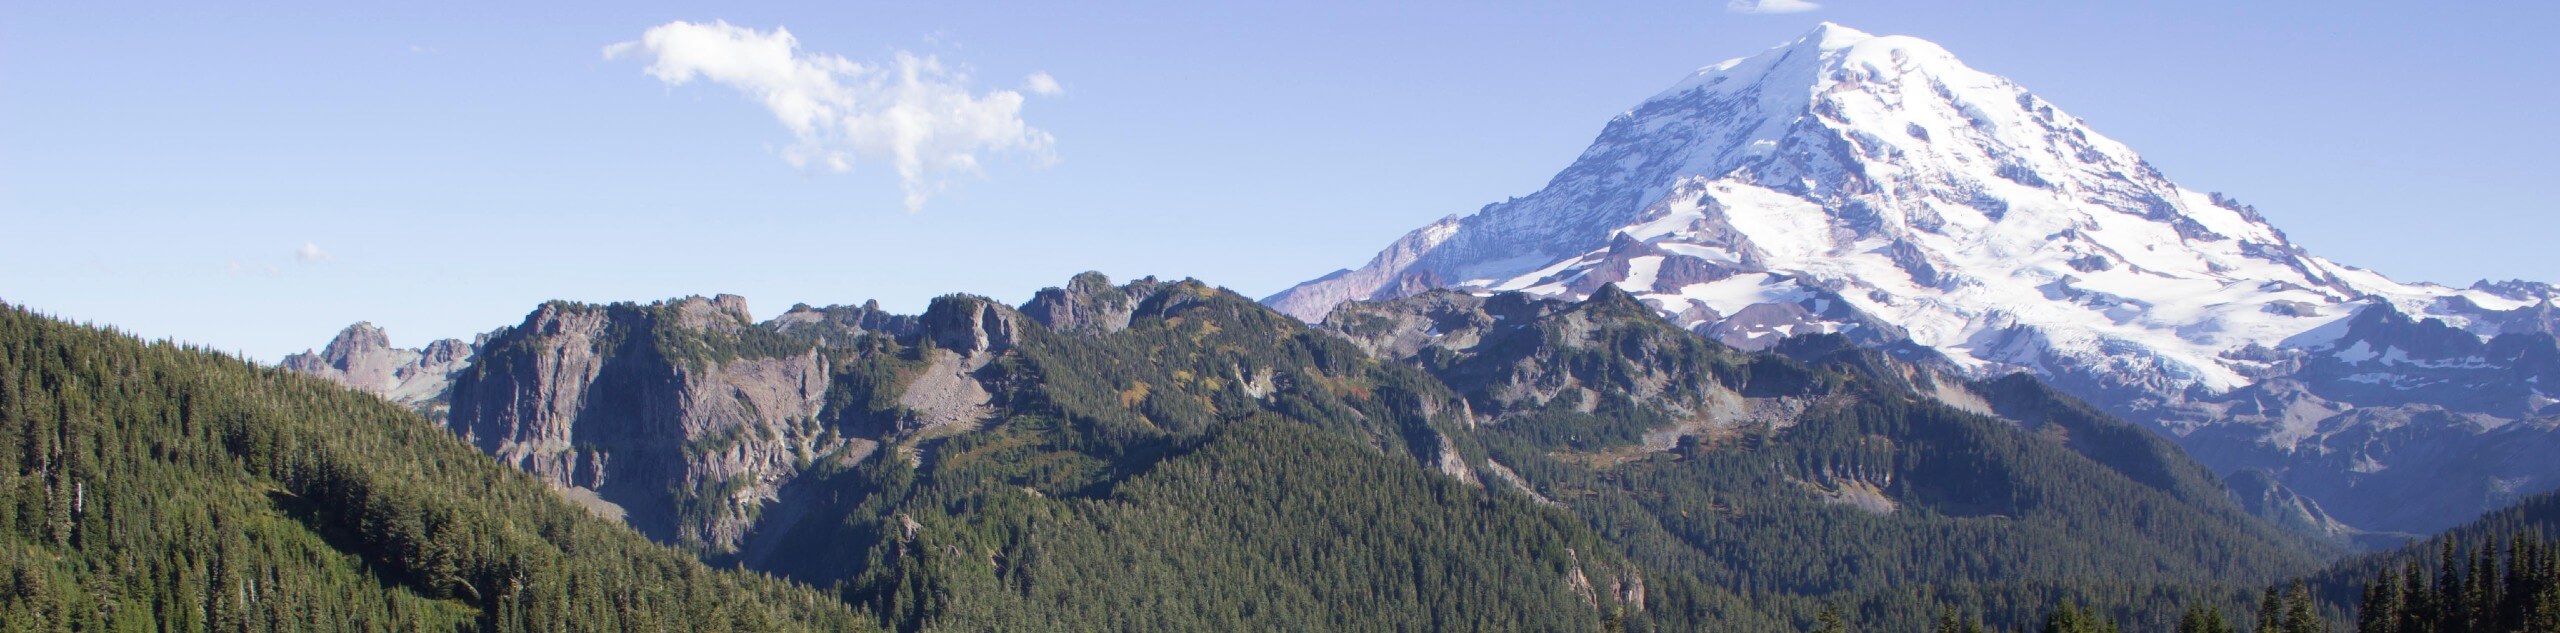 Tolmie Peak Alki Crest and Florence Peak